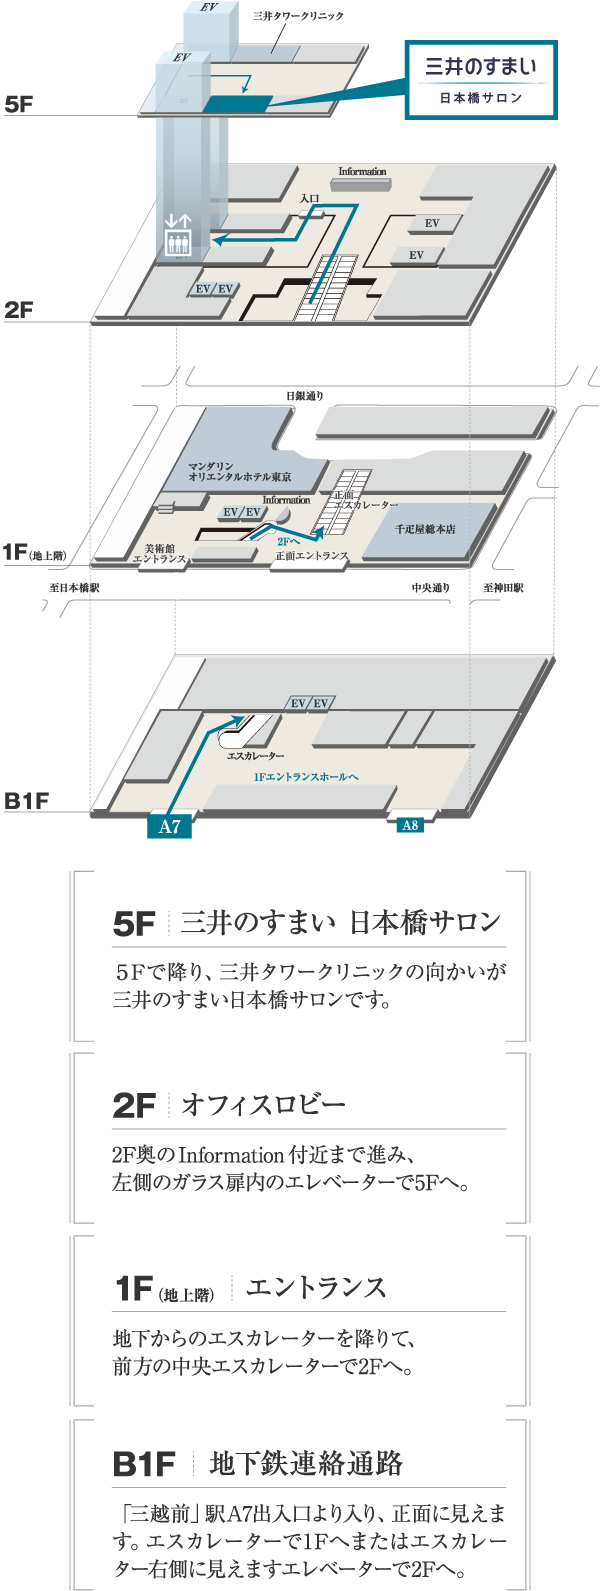 三井のすまい 日本橋サロン案内図